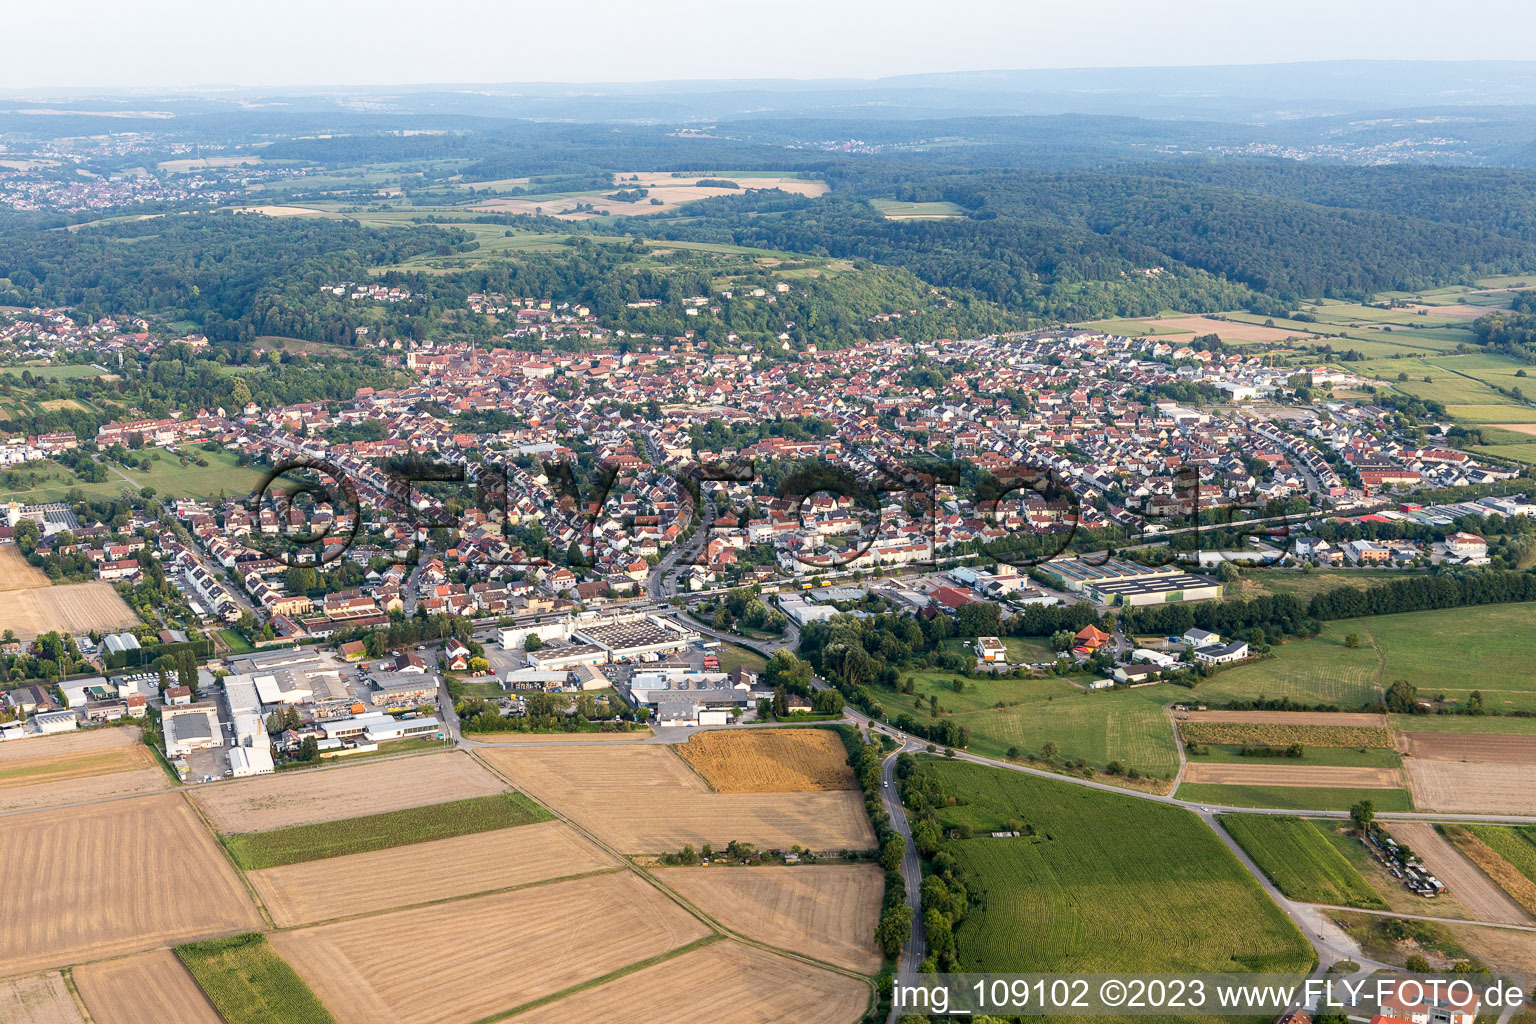 Weingarten im Bundesland Baden-Württemberg, Deutschland von der Drohne aus gesehen